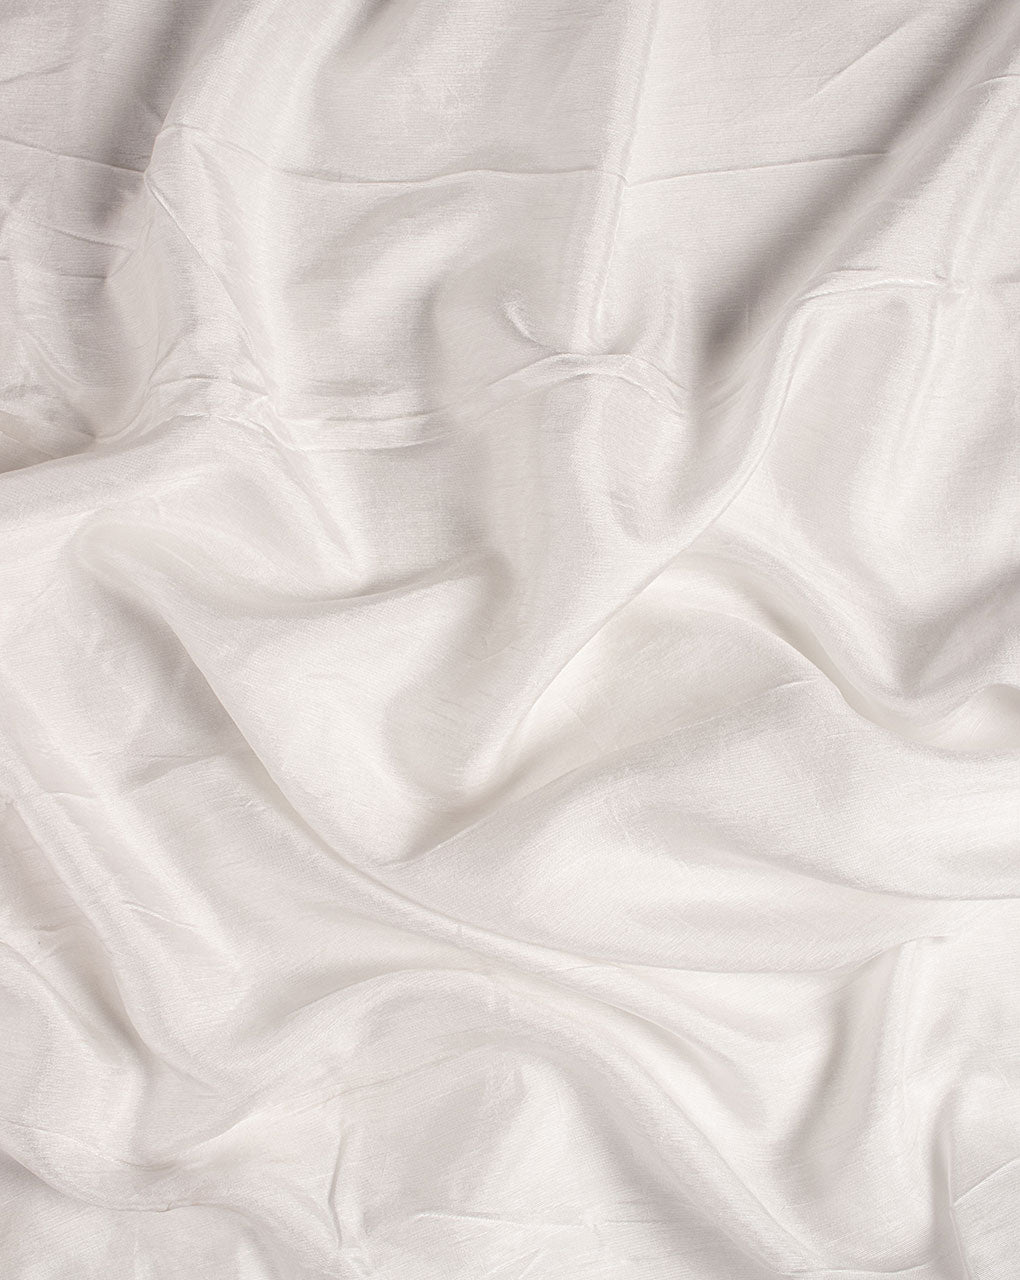 Silk Blend Fabric at Best Price in Mumbai, Maharashtra